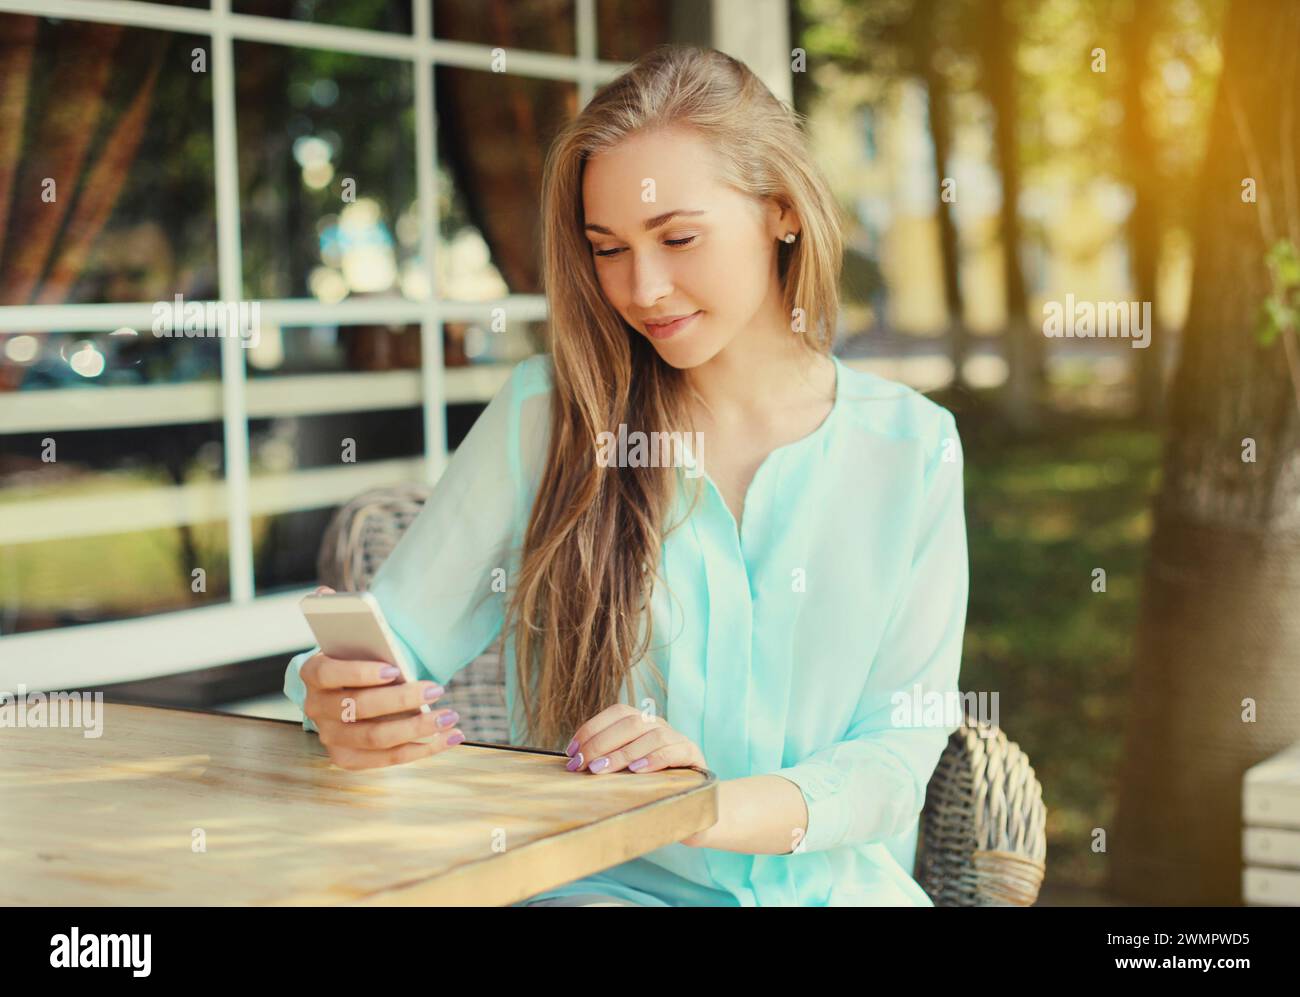 Glückliche kaukasische junge Frau 20s mit Handy, die auf das Gerät schaut, während sie am Tisch im Straßencafé im Sommerpark sitzt Stockfoto